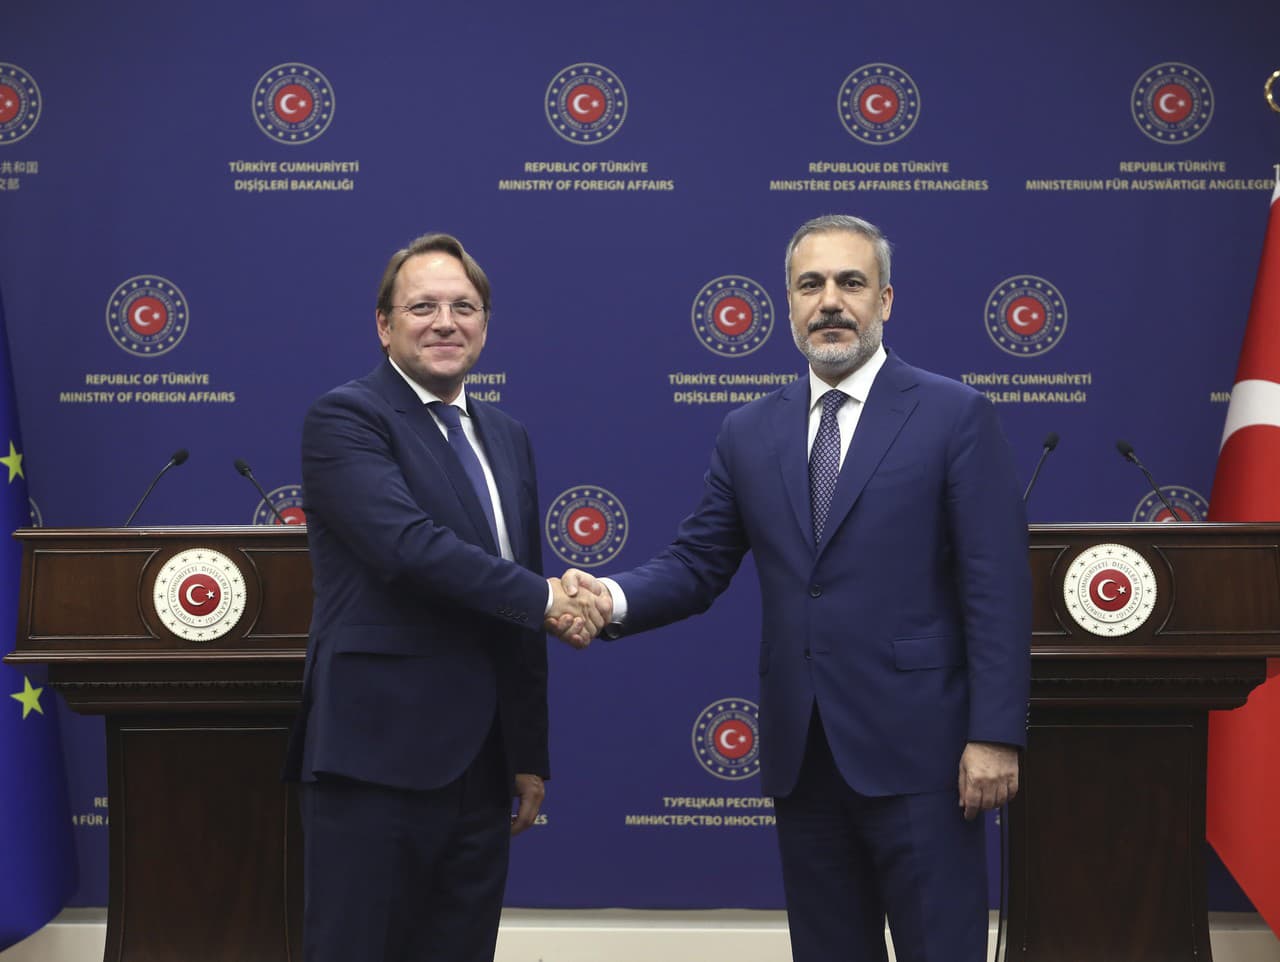 Turecký minister zahraničných vecí Hakan Fidan (vpravo) si podáva ruku s komisárom EÚ pre susedstvo a rozšírenie Oliverom Varhelym.